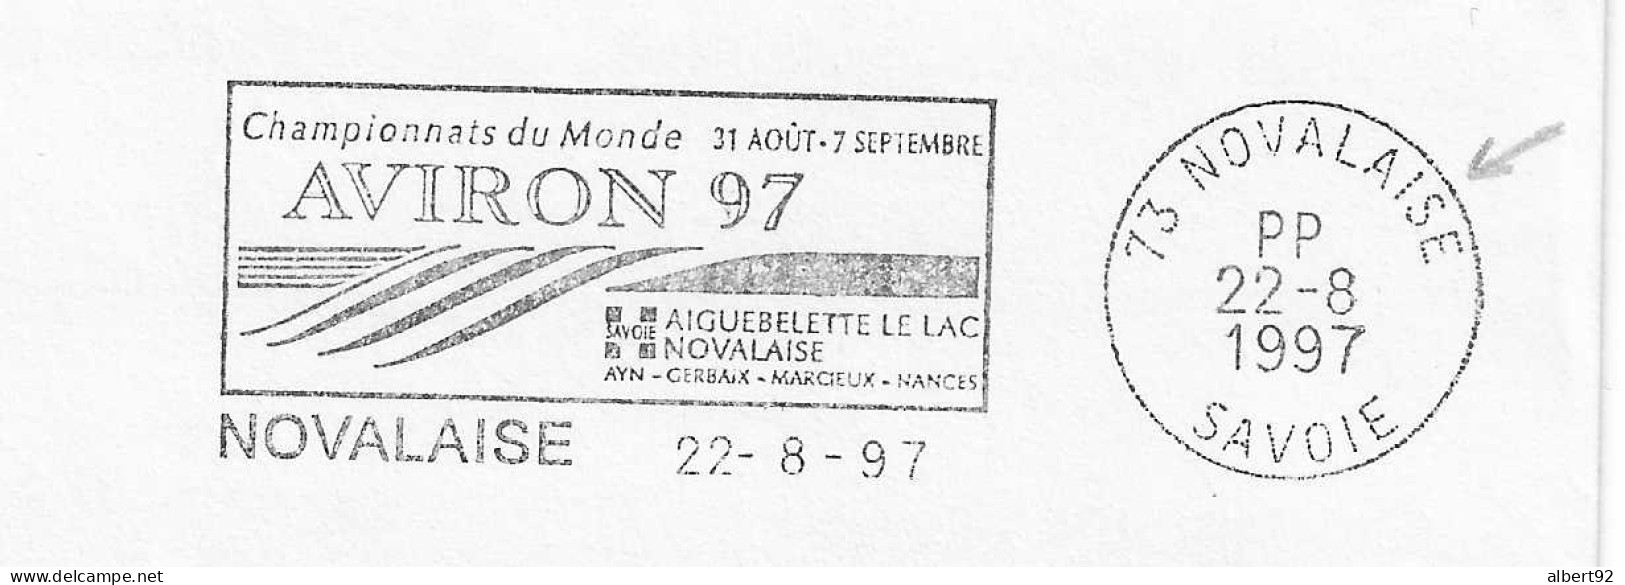 1997 Championnats Du Monde D'Aviron à Aiguebelette: Flamme Postale Port Payé (PP Dans Le Bloc Dateur) - Canottaggio